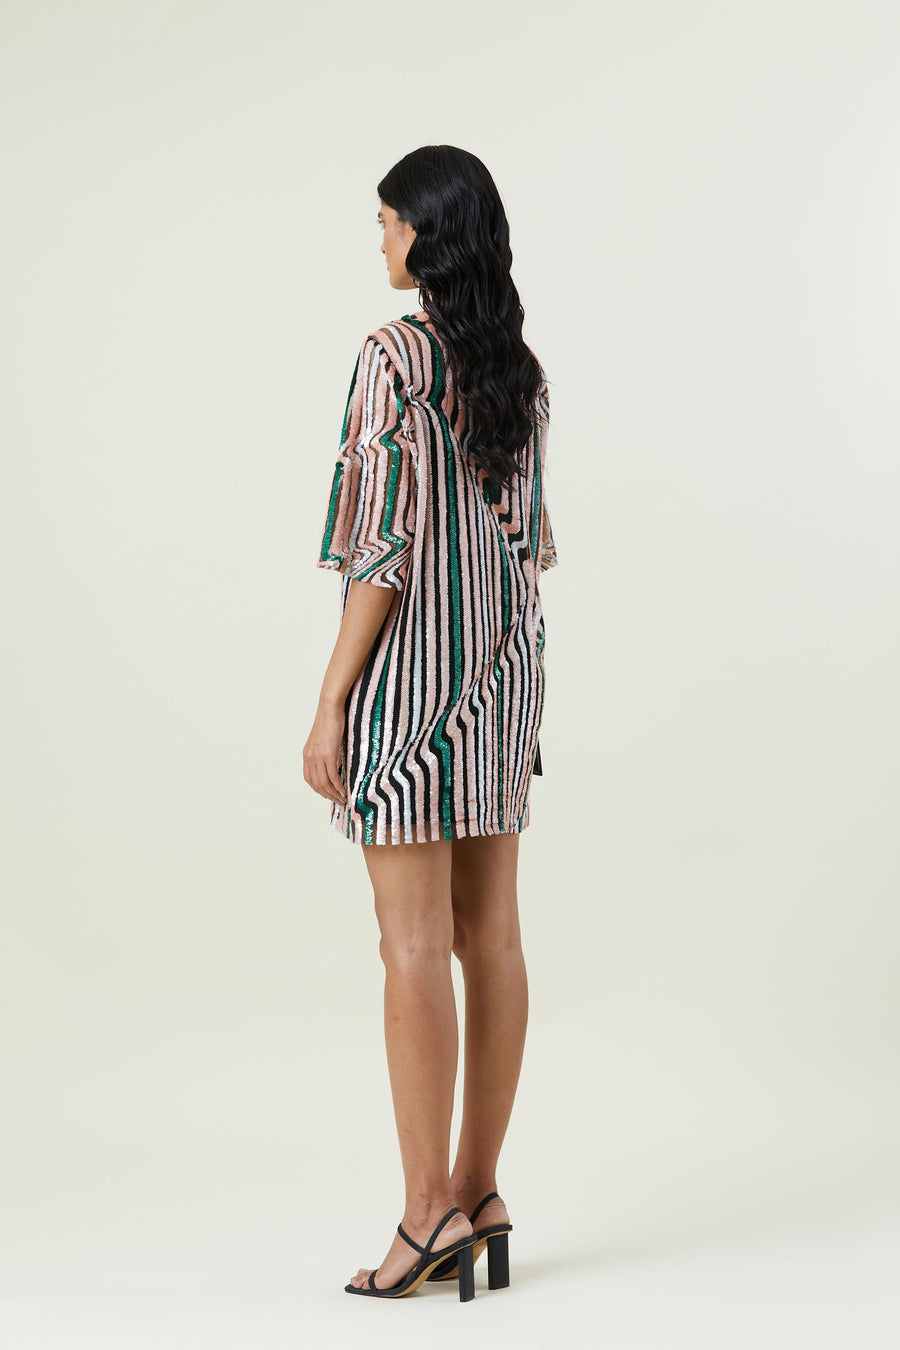 'GUMDROP' ILLUSION EMBELLISHED DRESS - Kanika Goyal Label